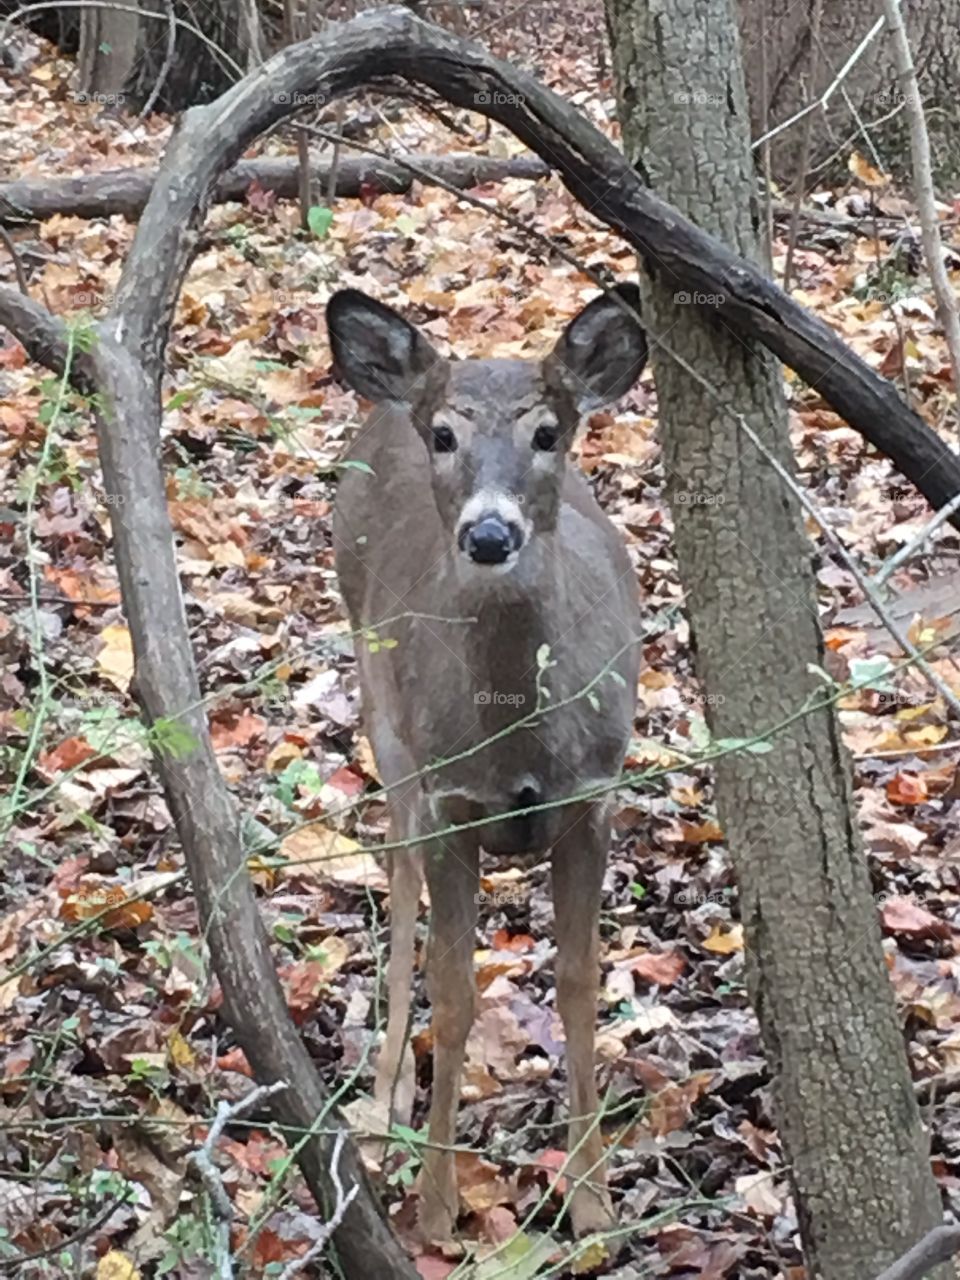  Curious young deer